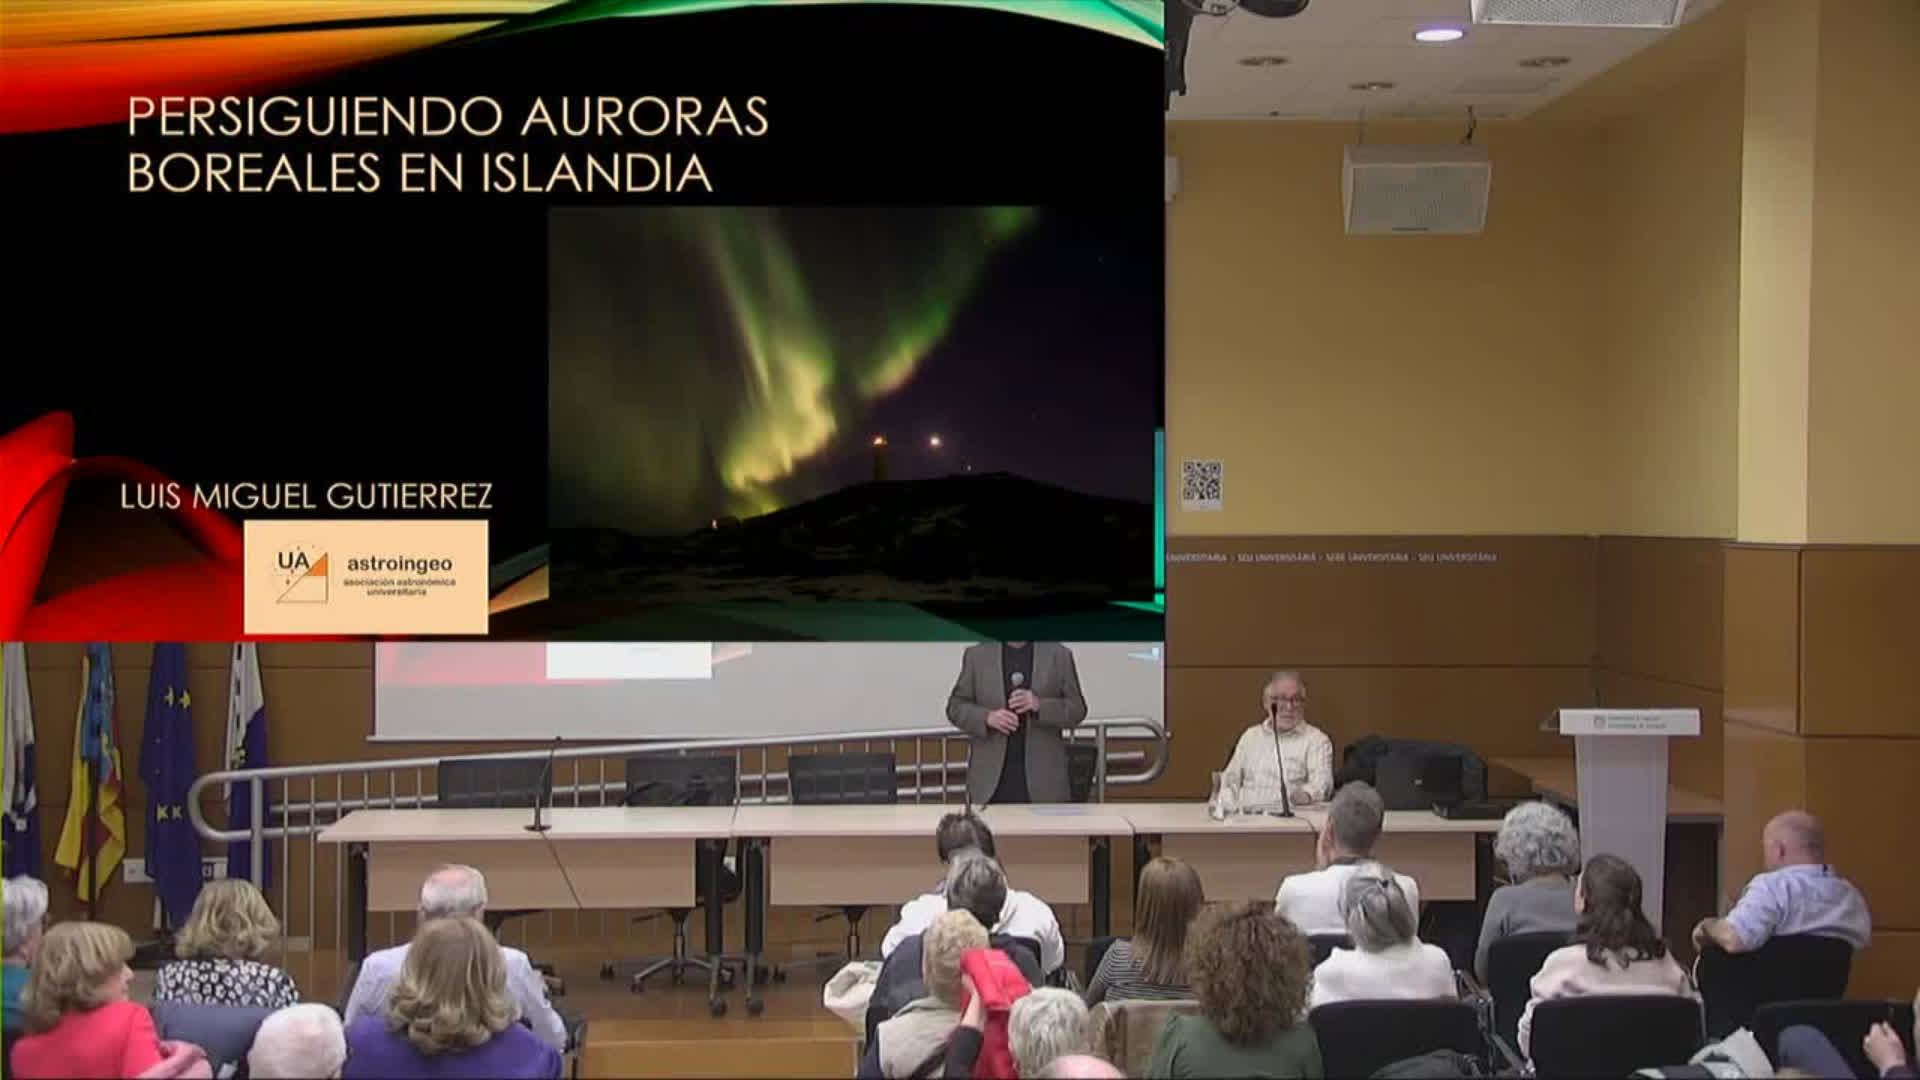 Persiguiendo Auroras boreales en Islandia